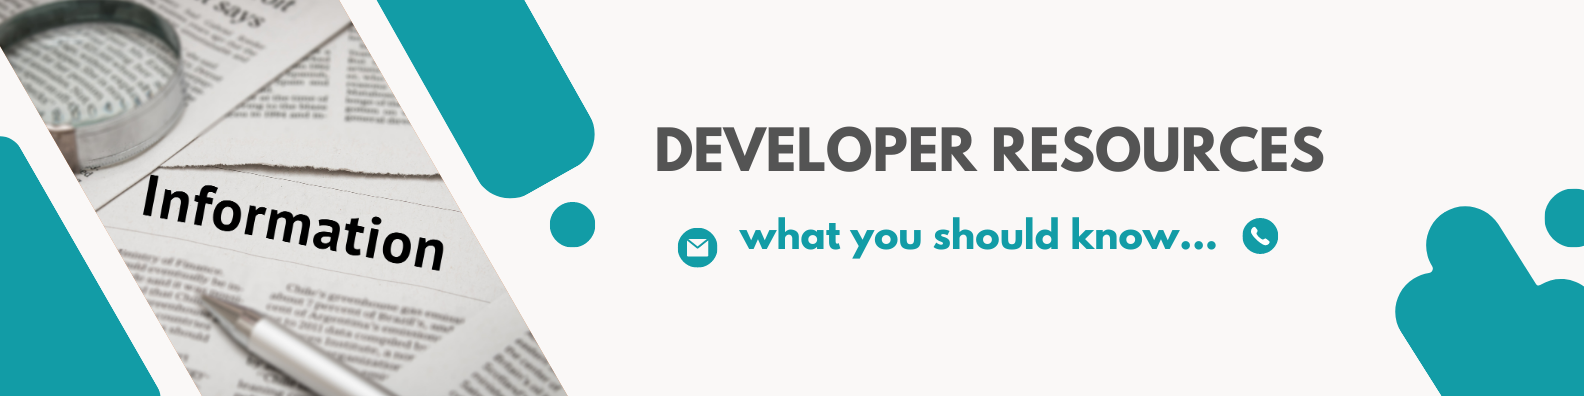 Developer Resources.png